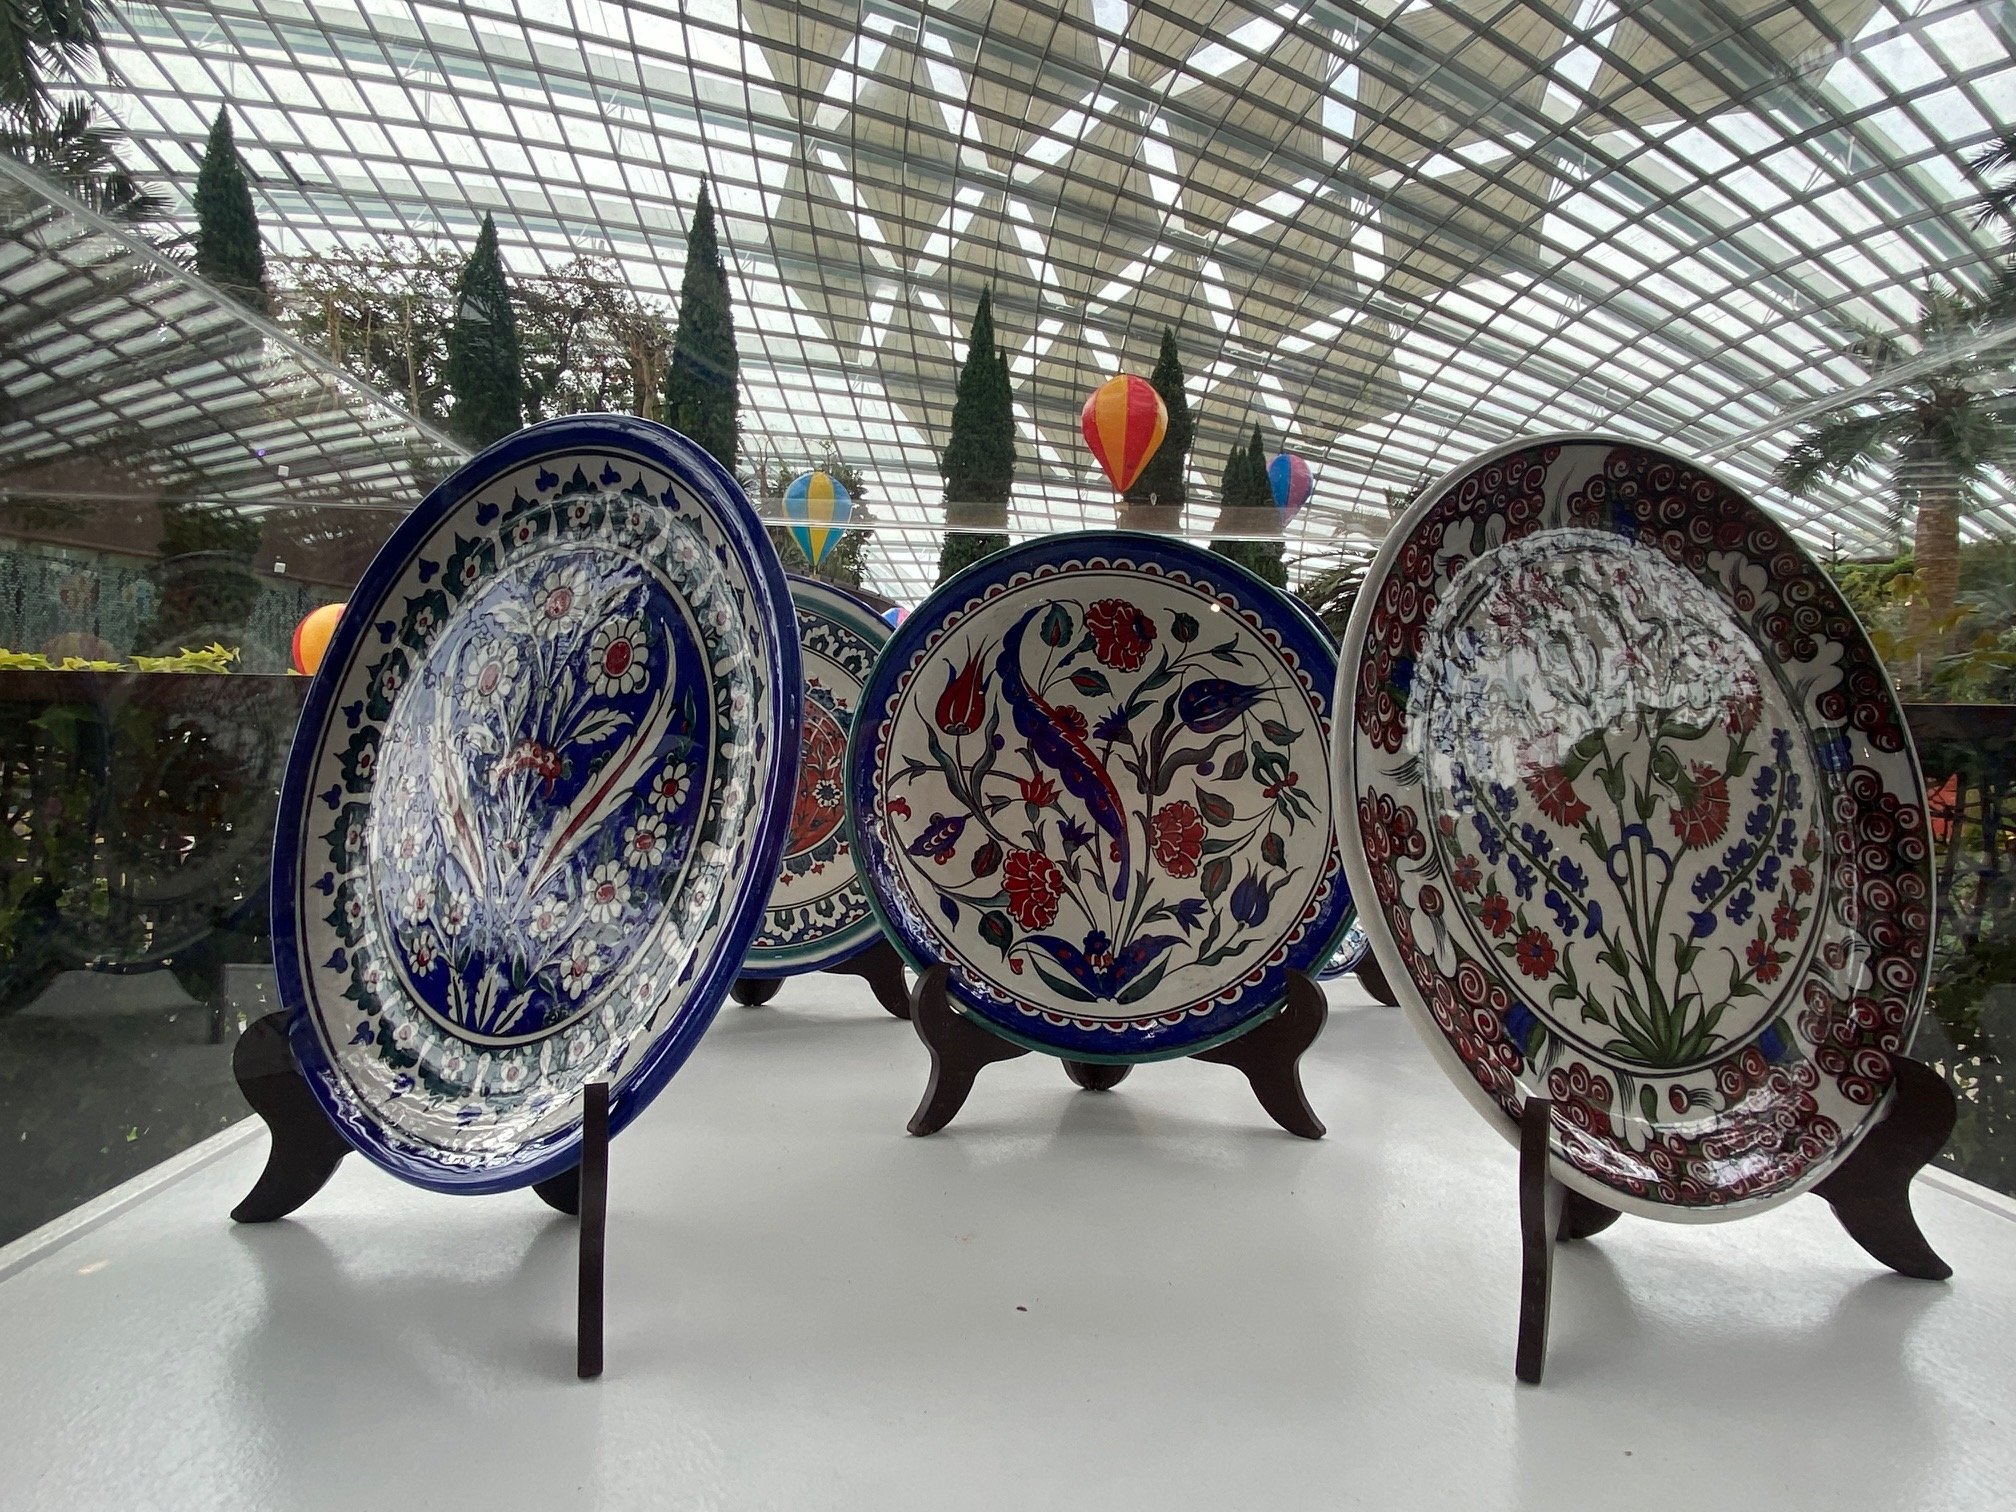 Keramik tradisional Turki ditampilkan di 